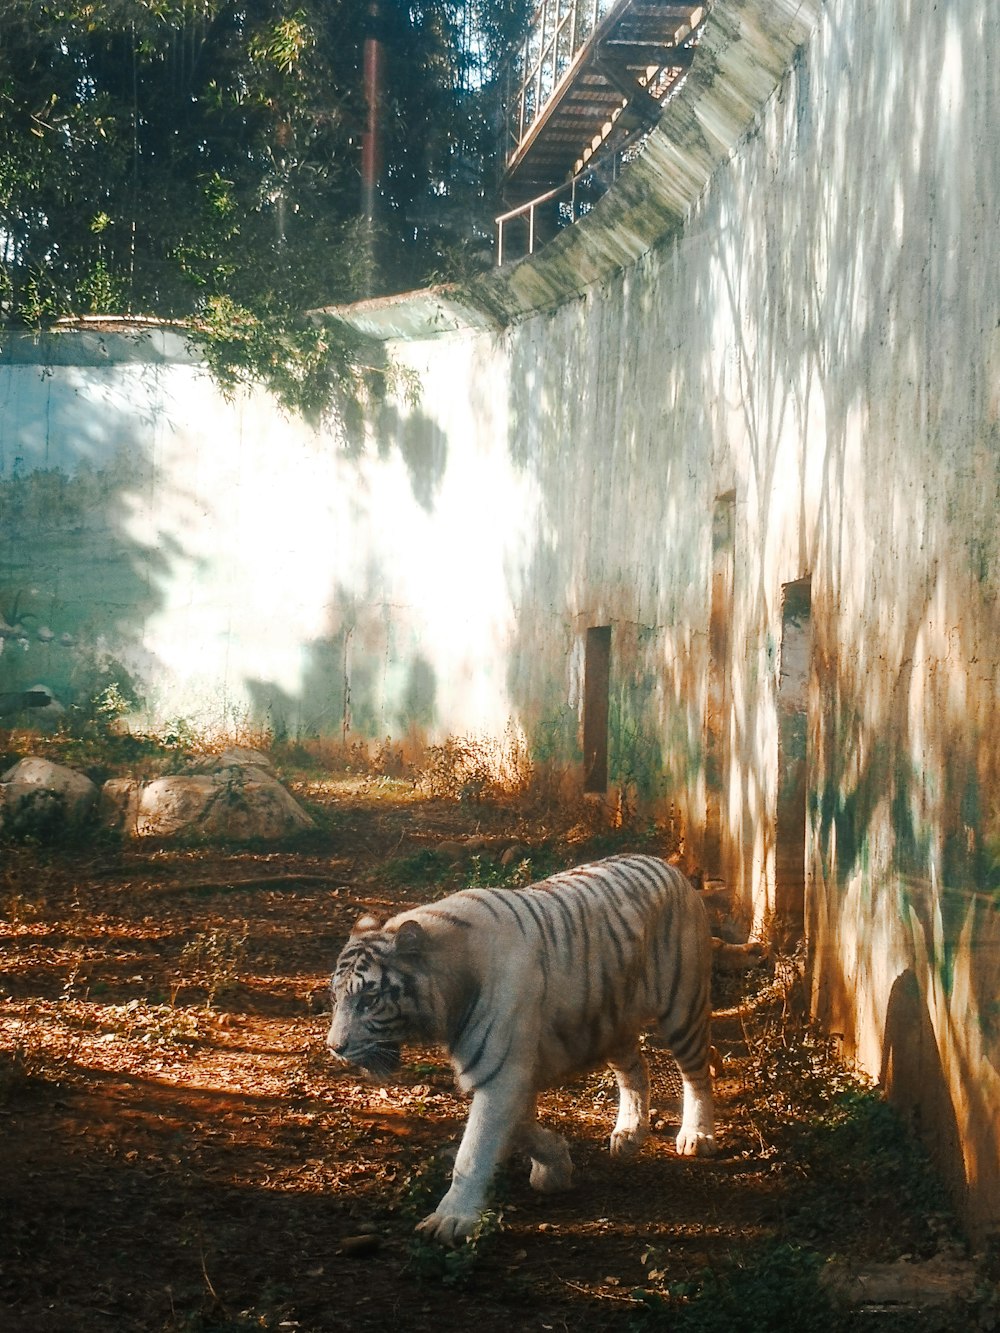 tigre caminando sobre tierra marrón